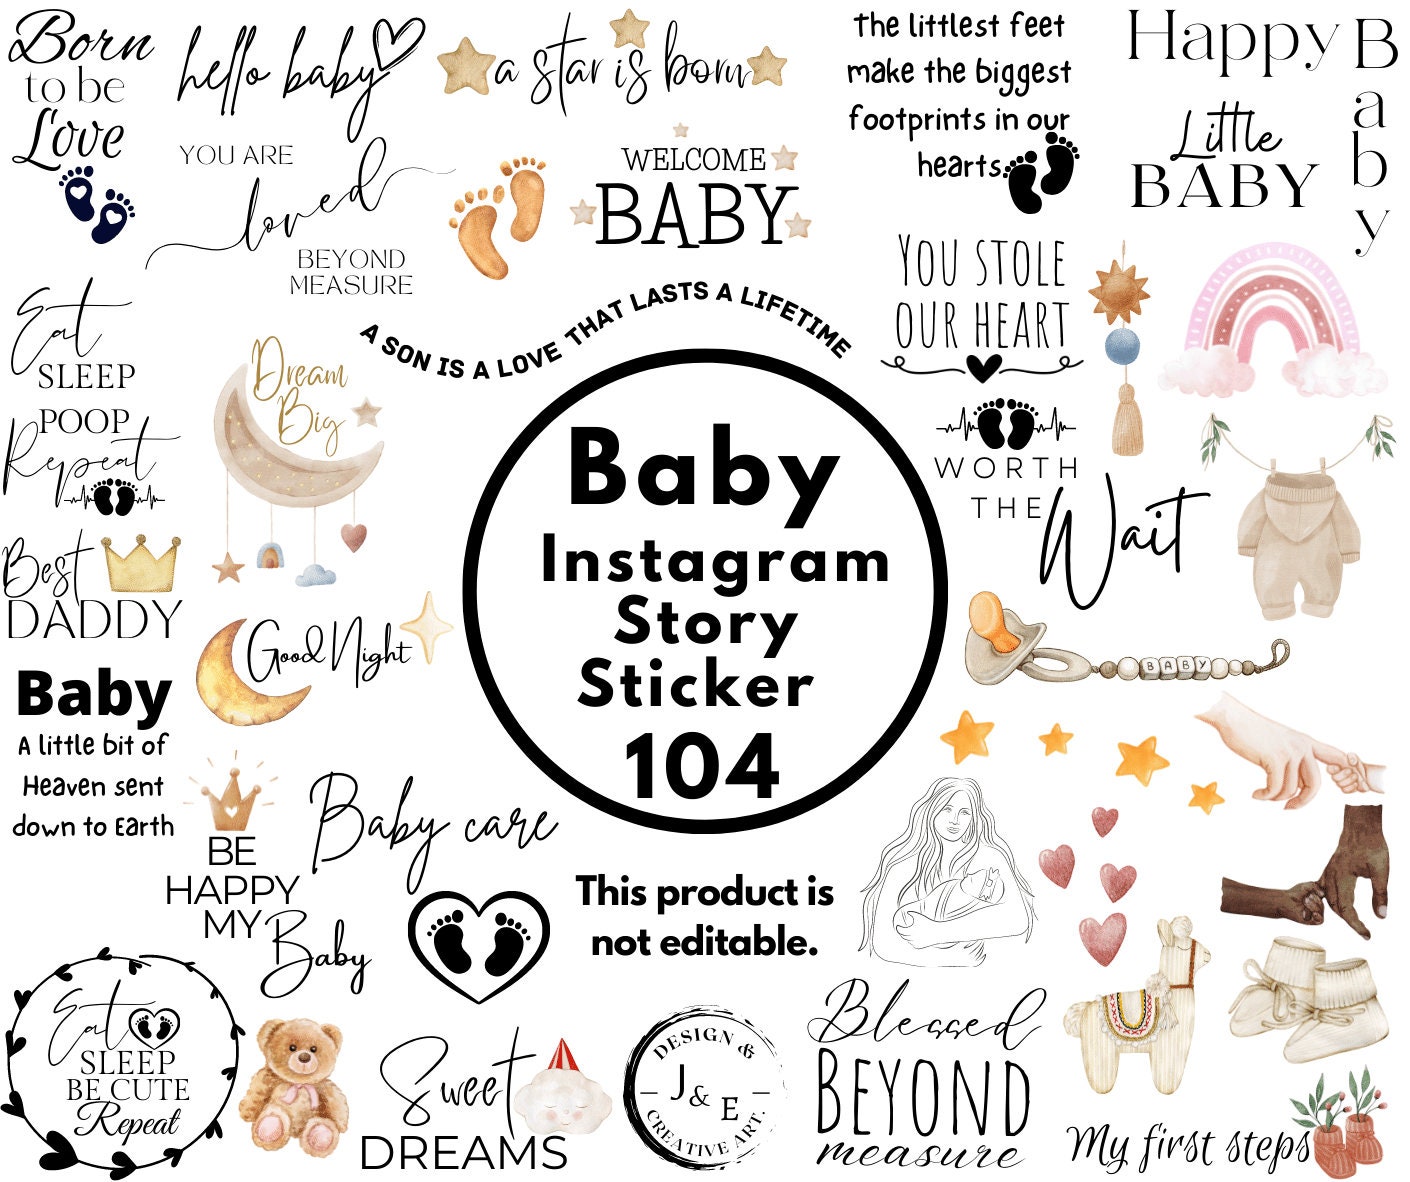 Gif girly story / stories instagram  Instagram and snapchat, Instagram  emoji, Birthday post instagram